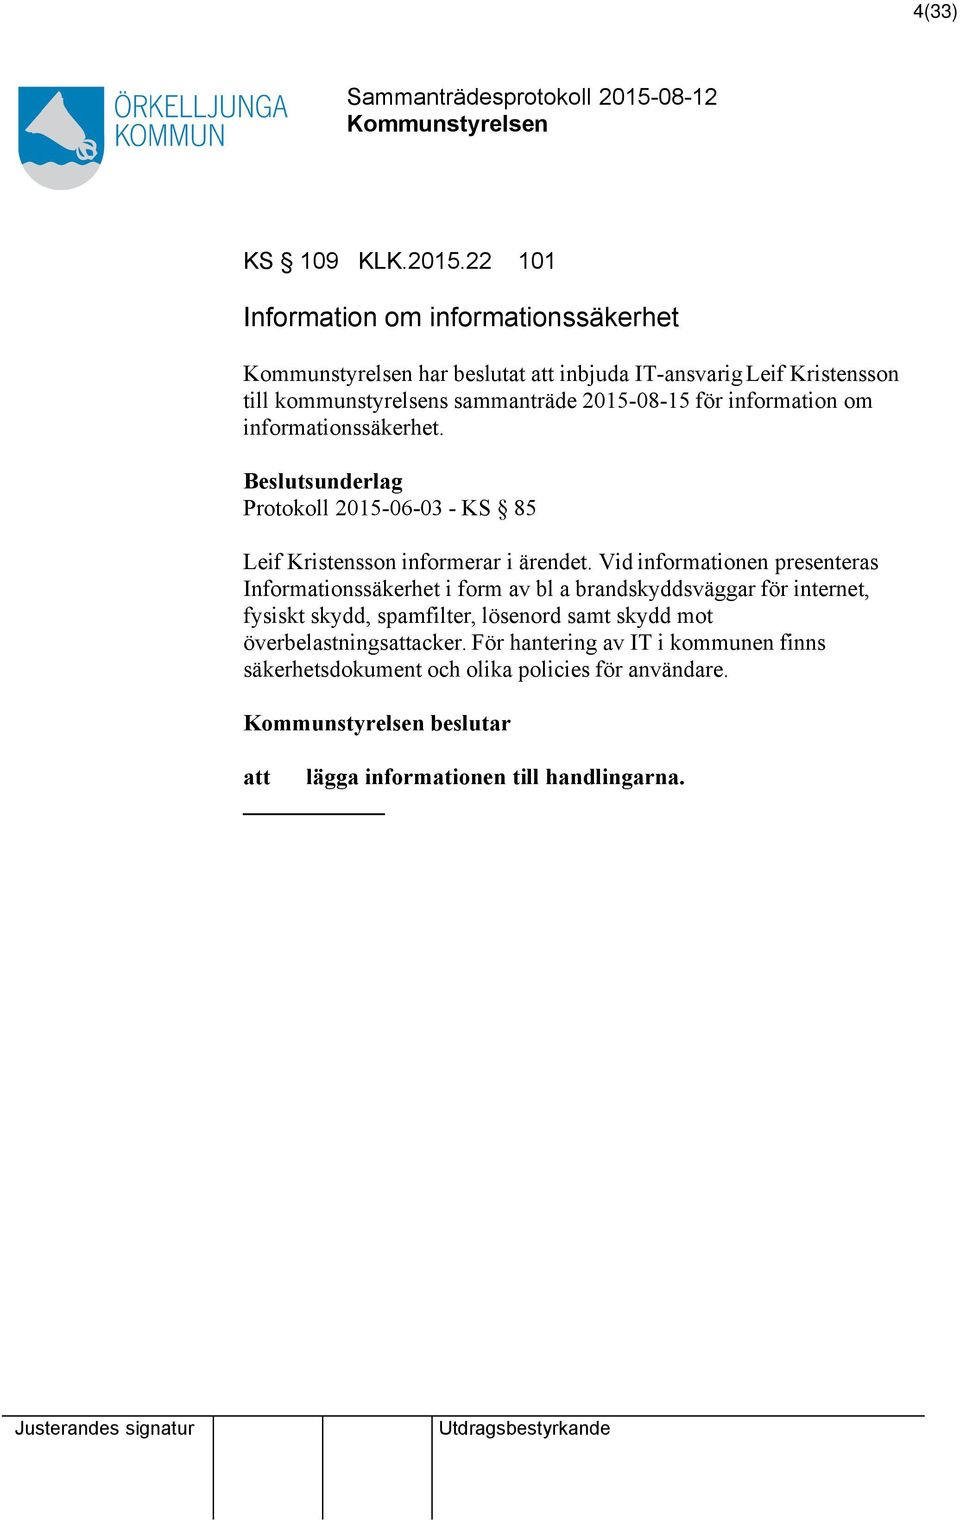 information om informationssäkerhet. Beslutsunderlag Protokoll 2015-06-03 - KS 85 Leif Kristensson informerar i ärendet.